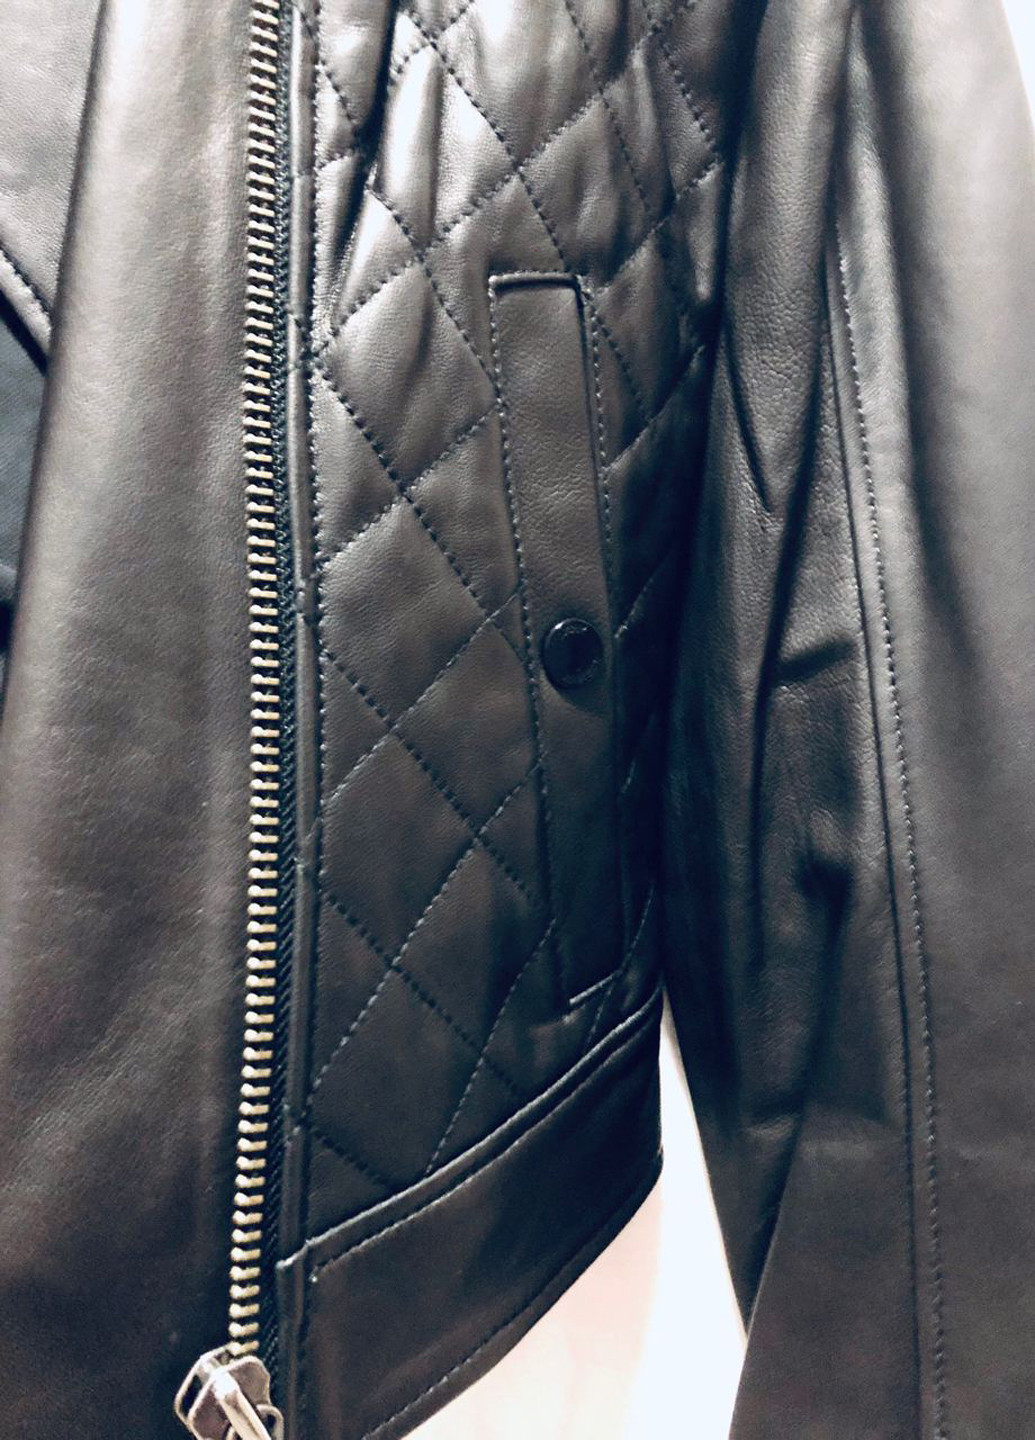 Черная демисезонная куртка кожаная Tommy Hilfiger